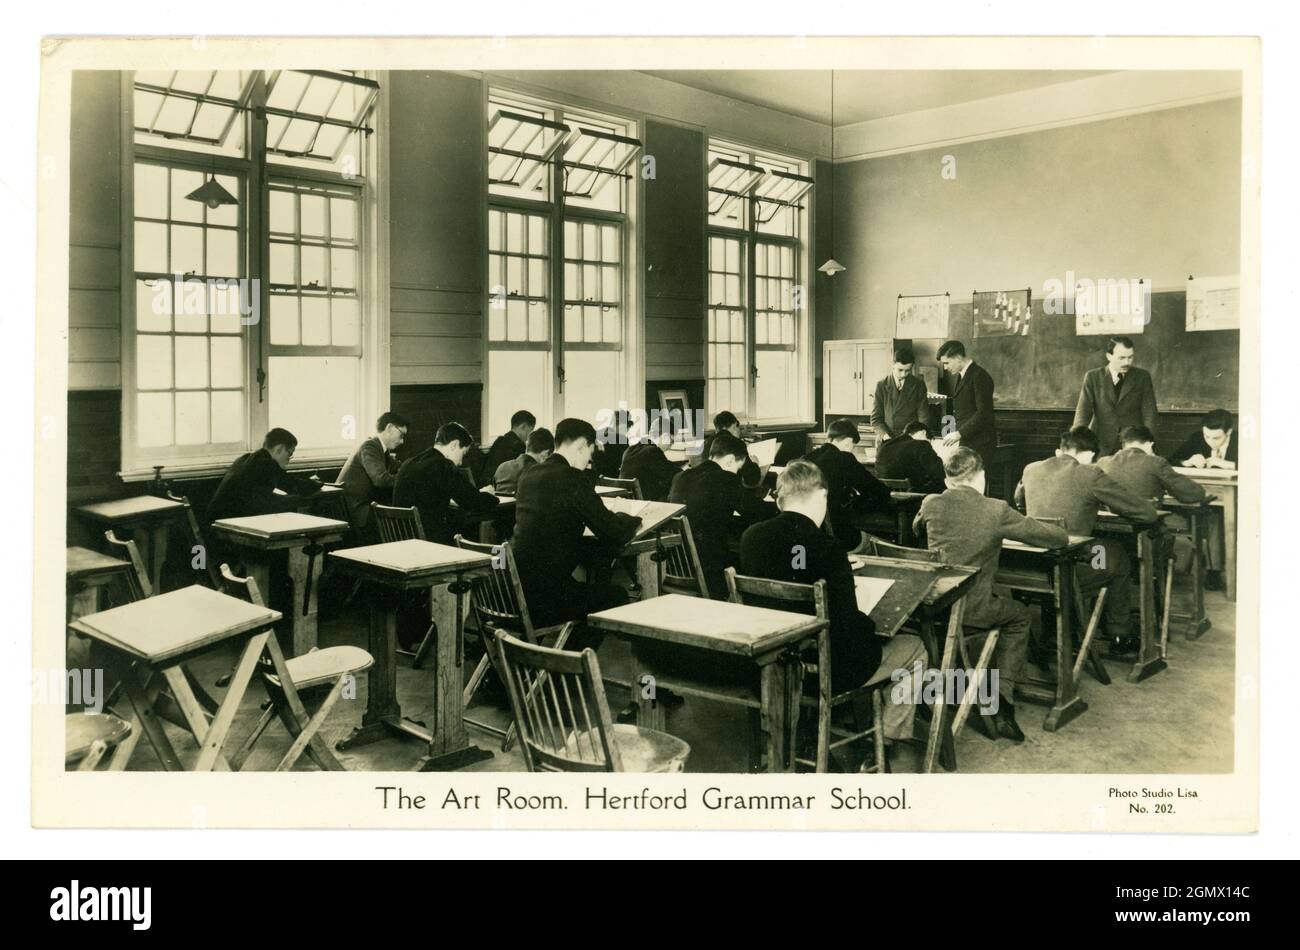 Cartolina originale degli anni '30 della sala d'arte Hertford Grammar School, ragazzi alle tavole da disegno, Hertford, Hertfordshire, Inghilterra, Regno Unito Foto Stock